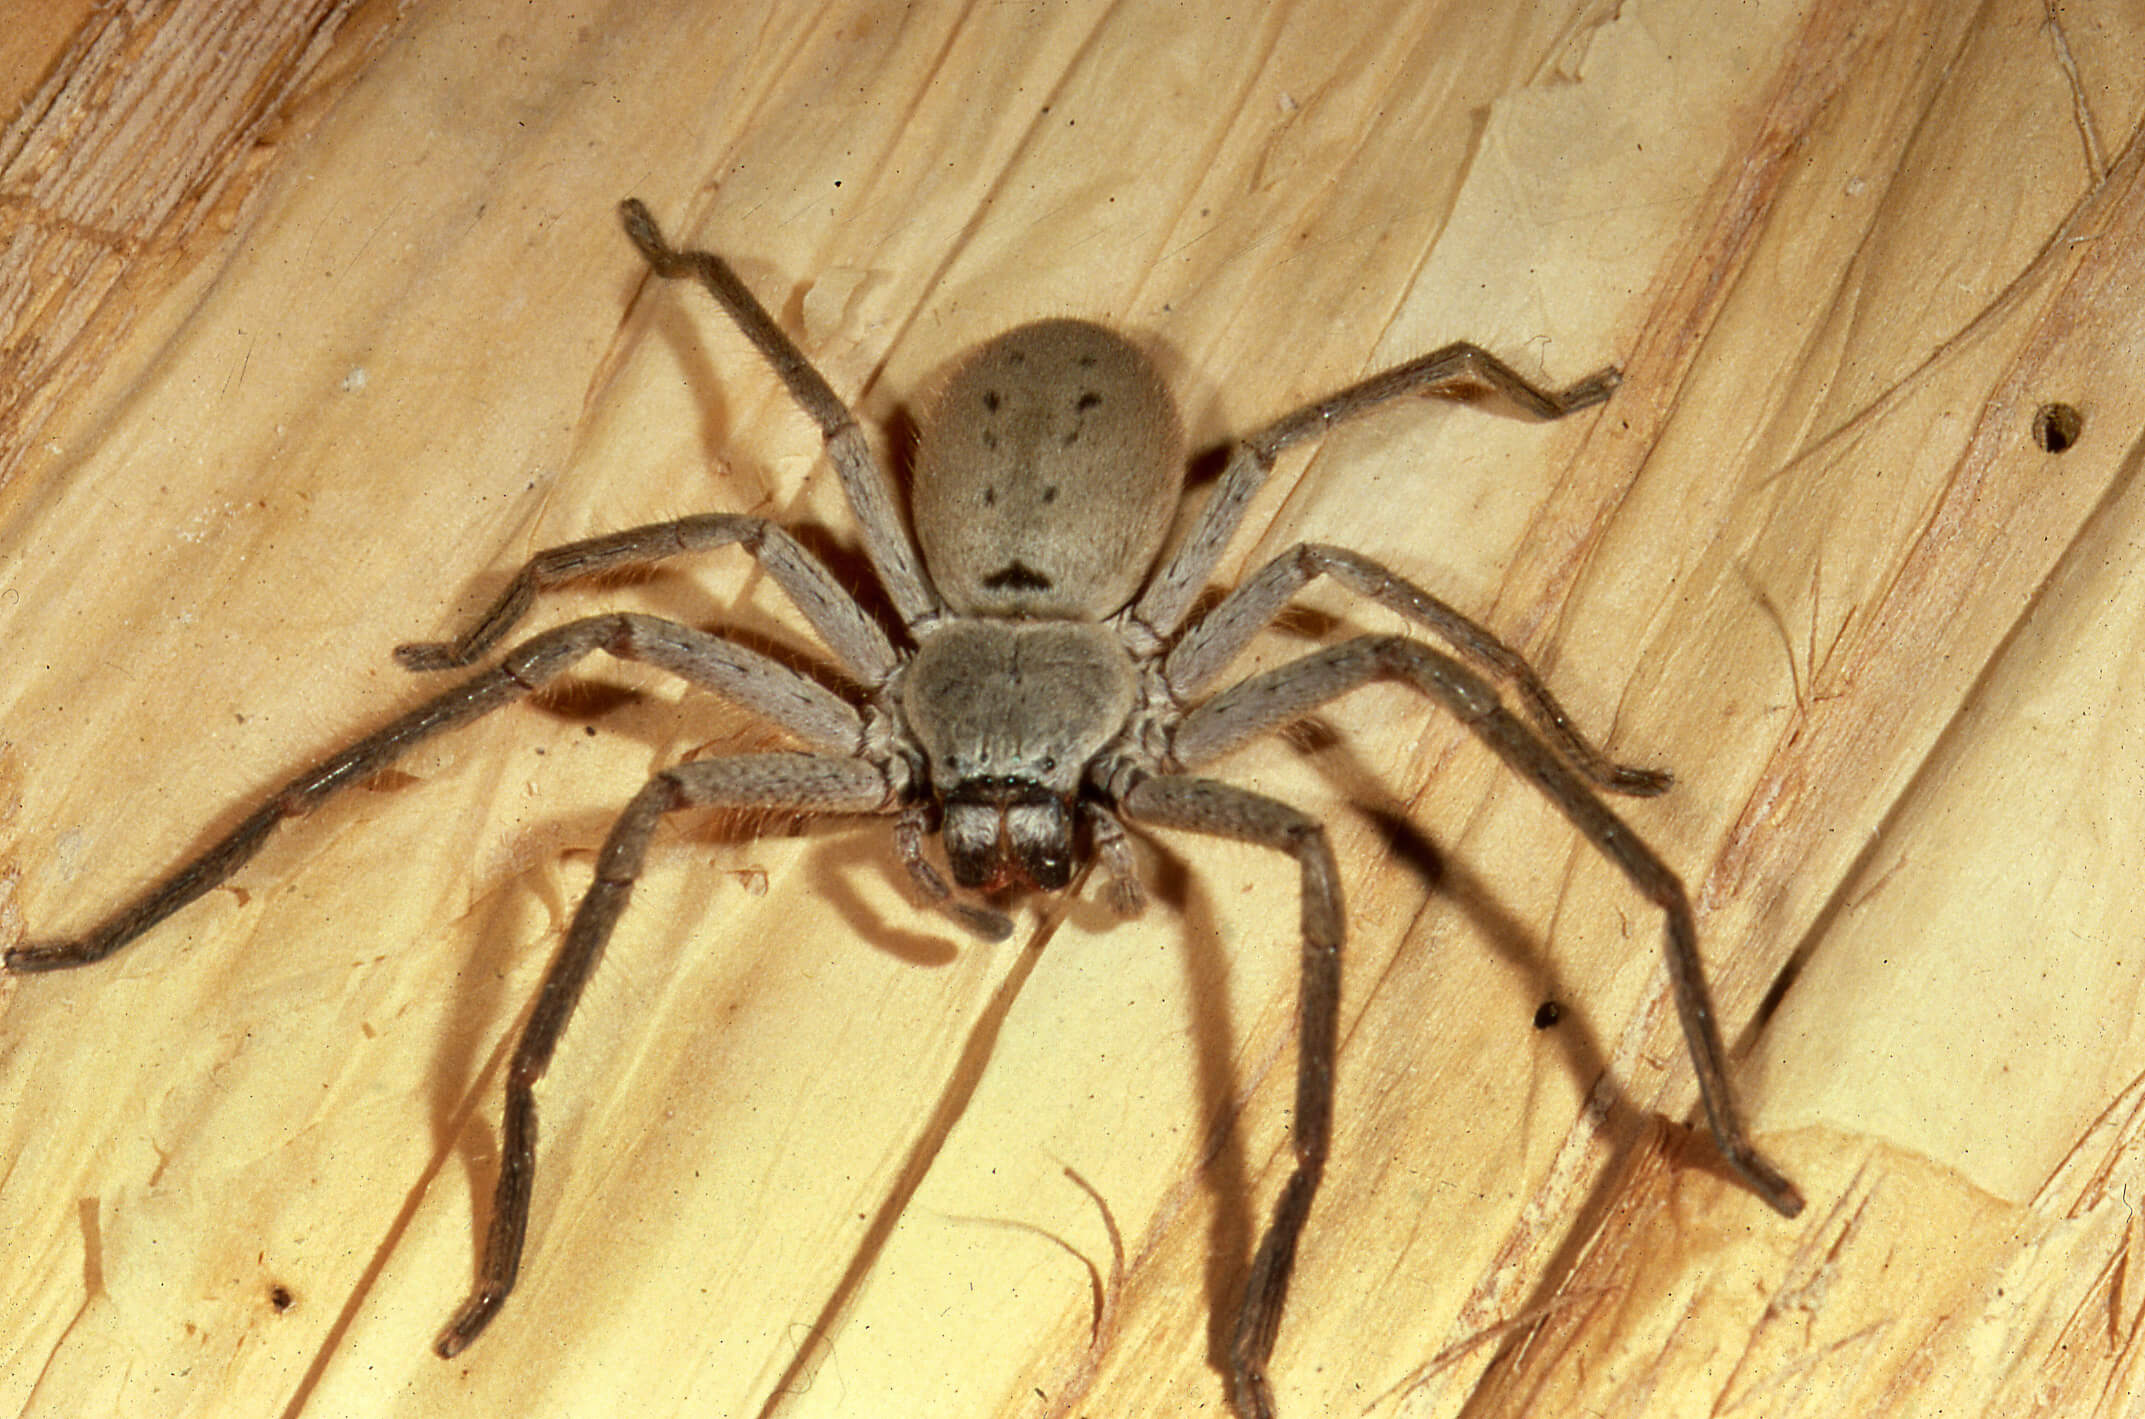 Huntsman Spiders - The Australian Museum